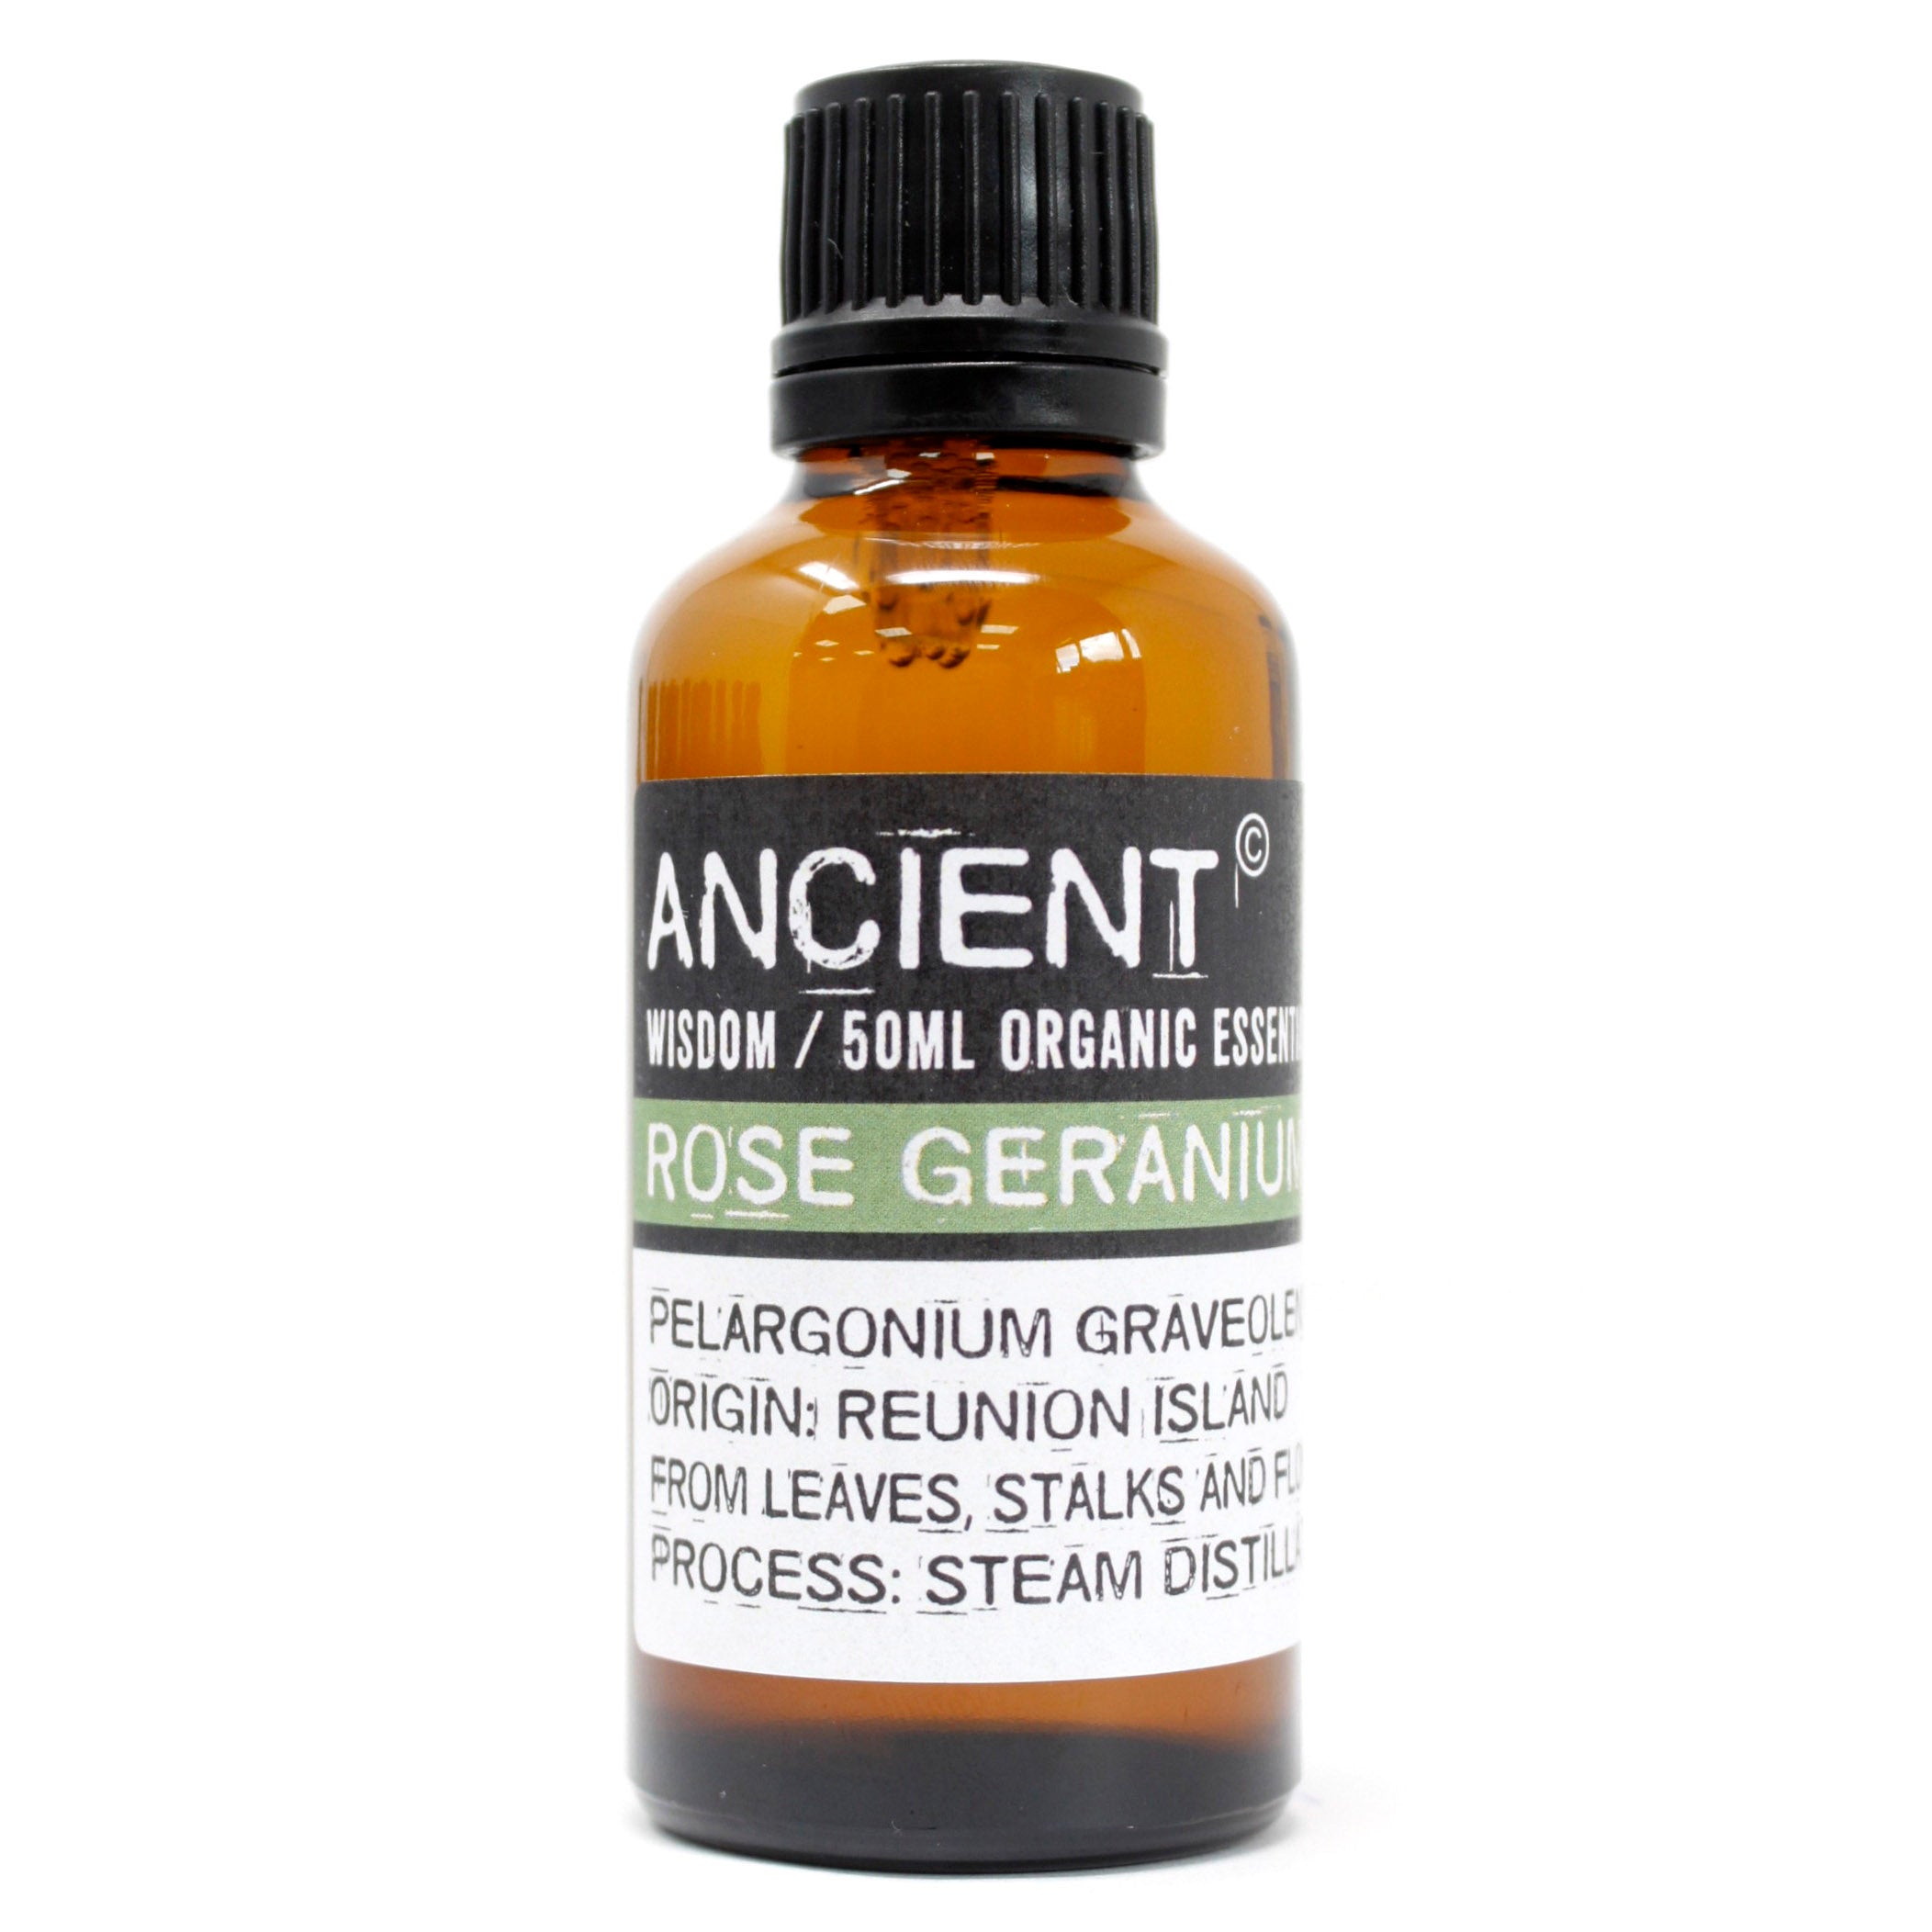 View Rose Geranium Organic Essential Oil 50ml information